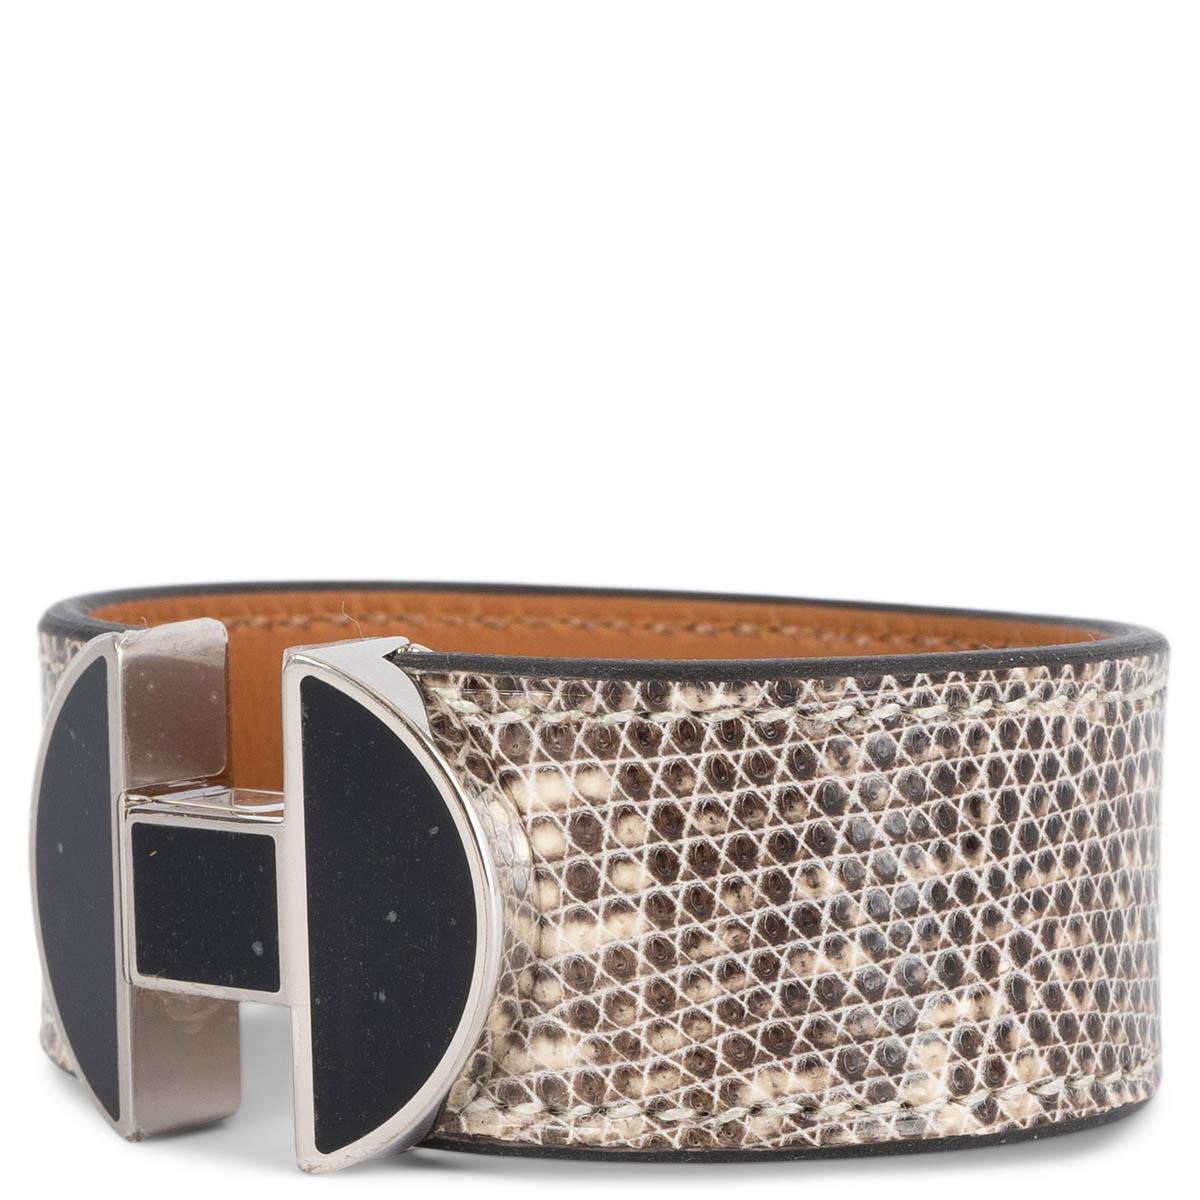 100% authentisches Hermès 2002 Armband in ombre (naturbeige) Eidechse mit einem Verschluss aus schwarzer Emaille und Palladiumbeschlägen. Wurde getragen und ist in praktisch neuem Zustand.

Messungen
Tag Größe	T2
Höhe	2.2cm (0.9in)
Länge	16cm